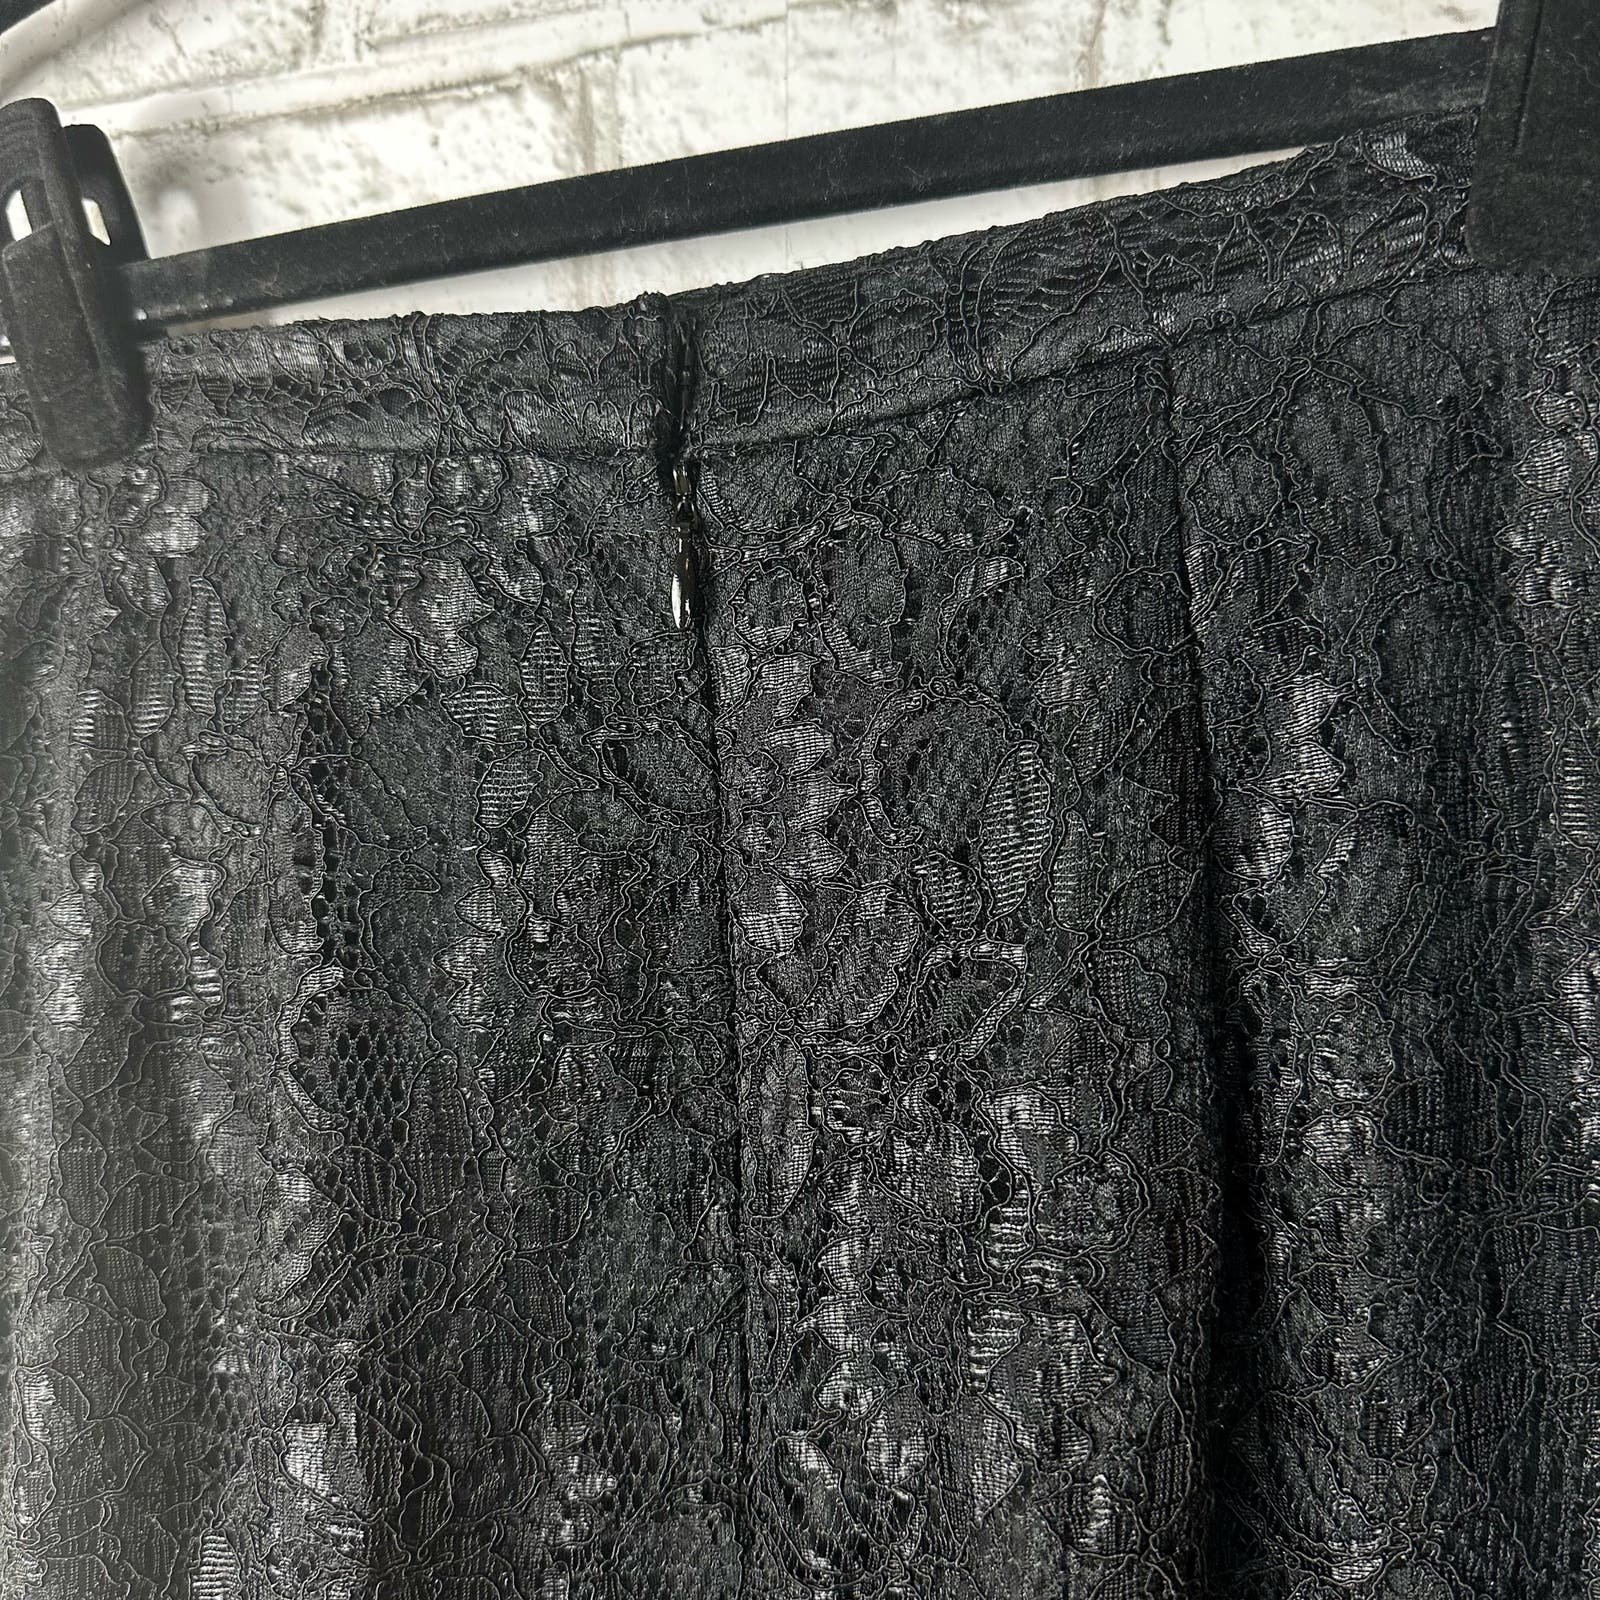 Classic Xscape Skirt Lace Pencil Knee Length High Waist Party Cocktail New NWT Black 10 NJZFYrrJc Zero Profit 